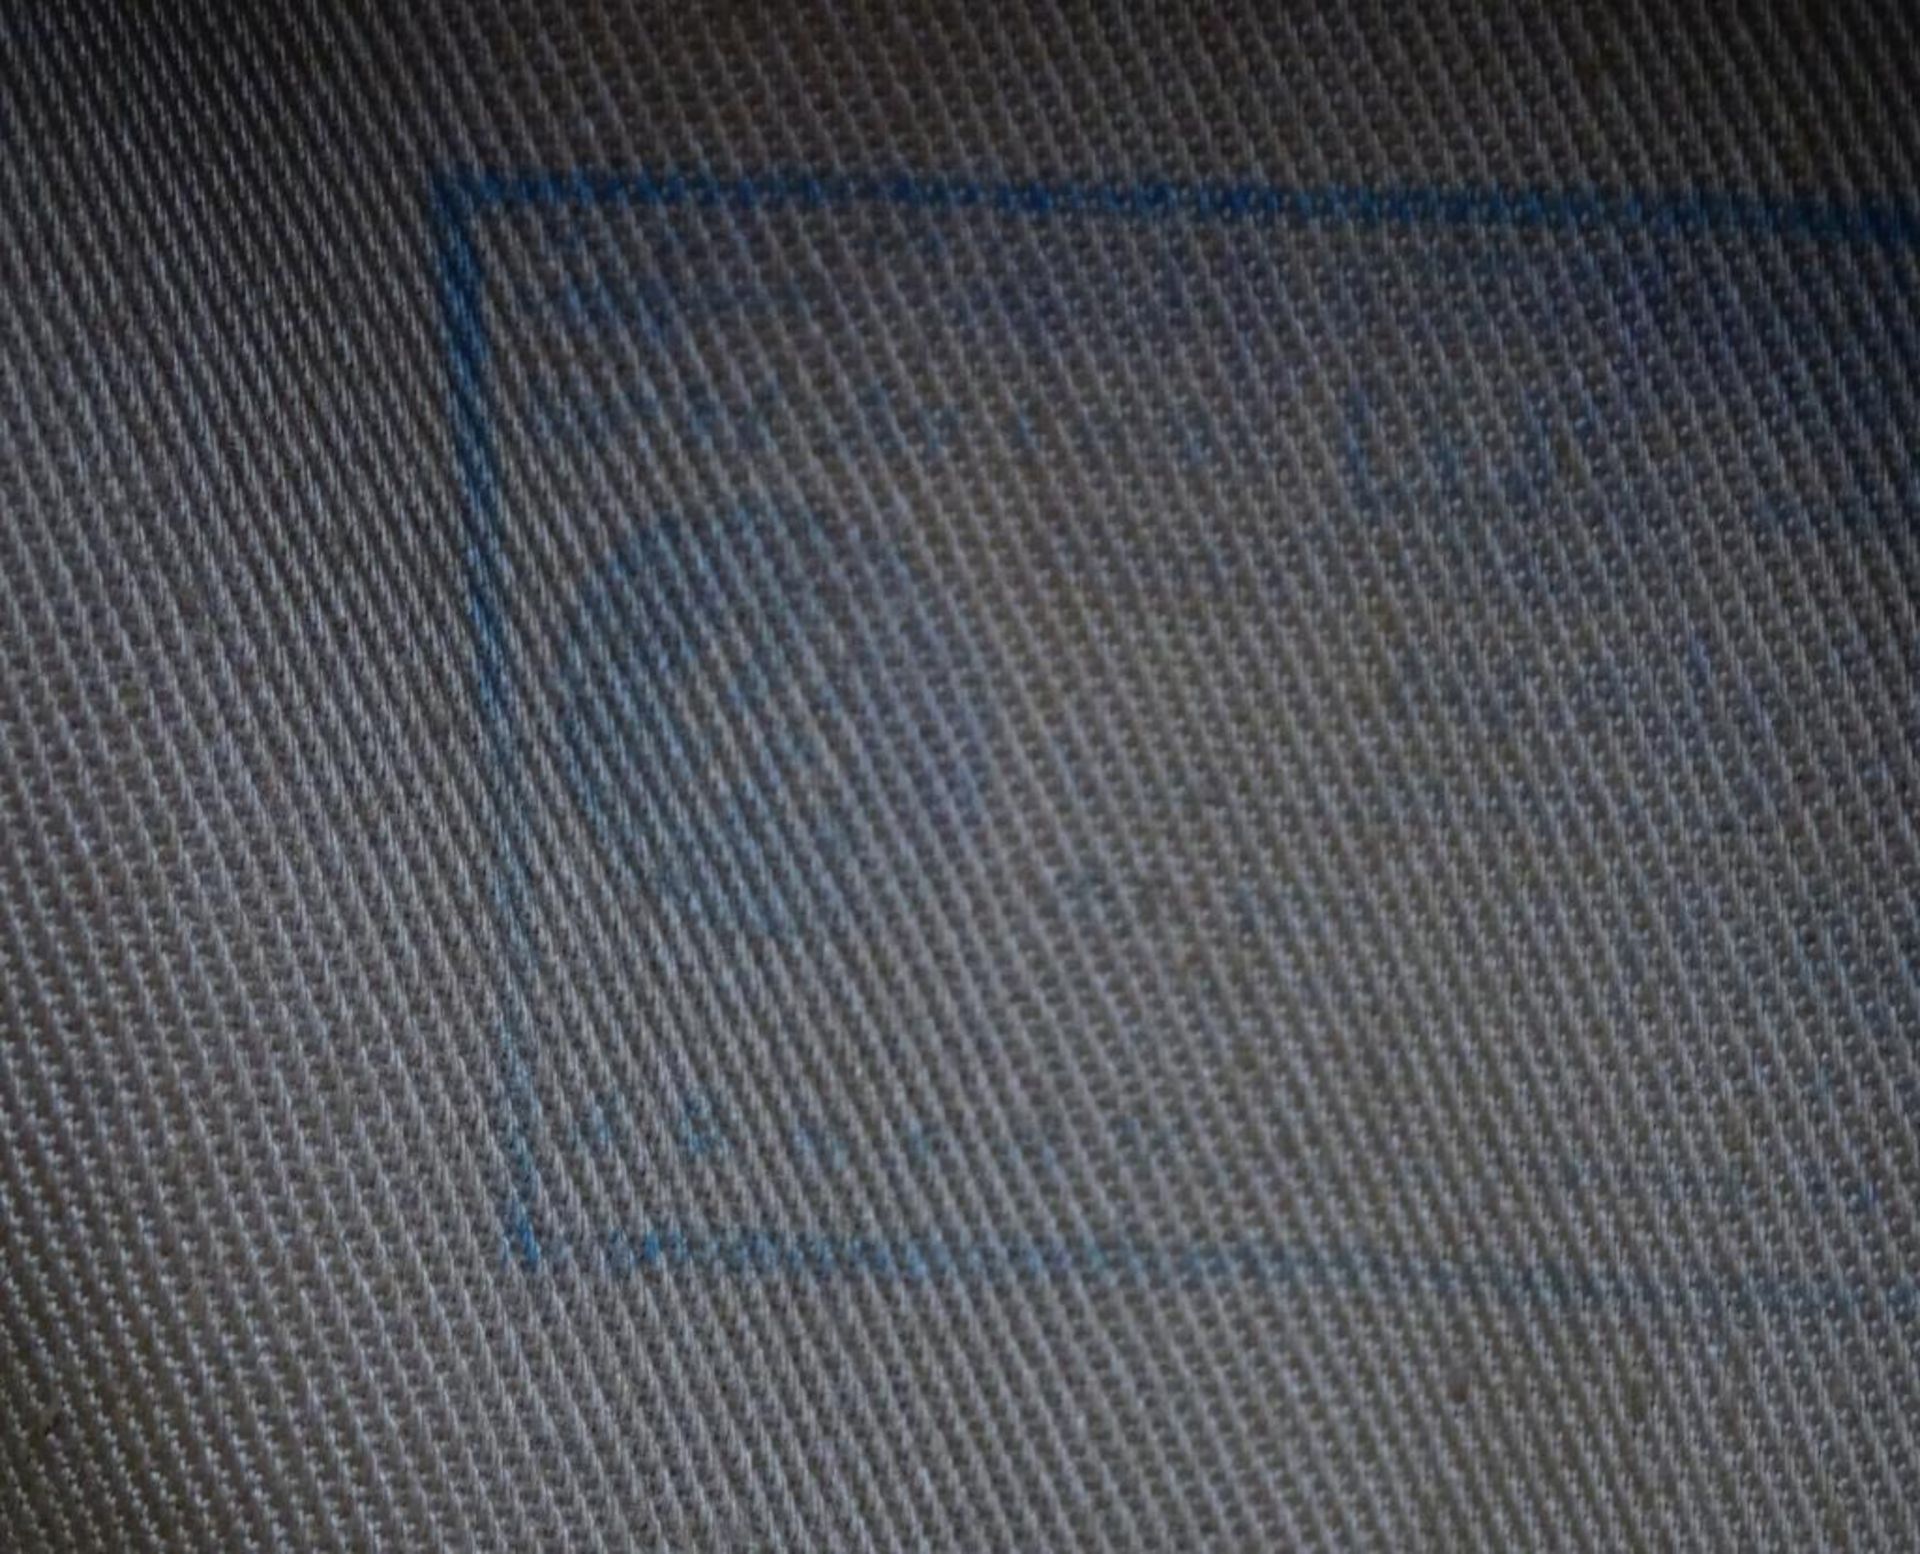 SS-Feldmütze,innen Stempelung mit SS Zeichen,RZM,sowie: Mei&Lee Bekleidung KB-Nr.0/0750/016, - Bild 7 aus 8